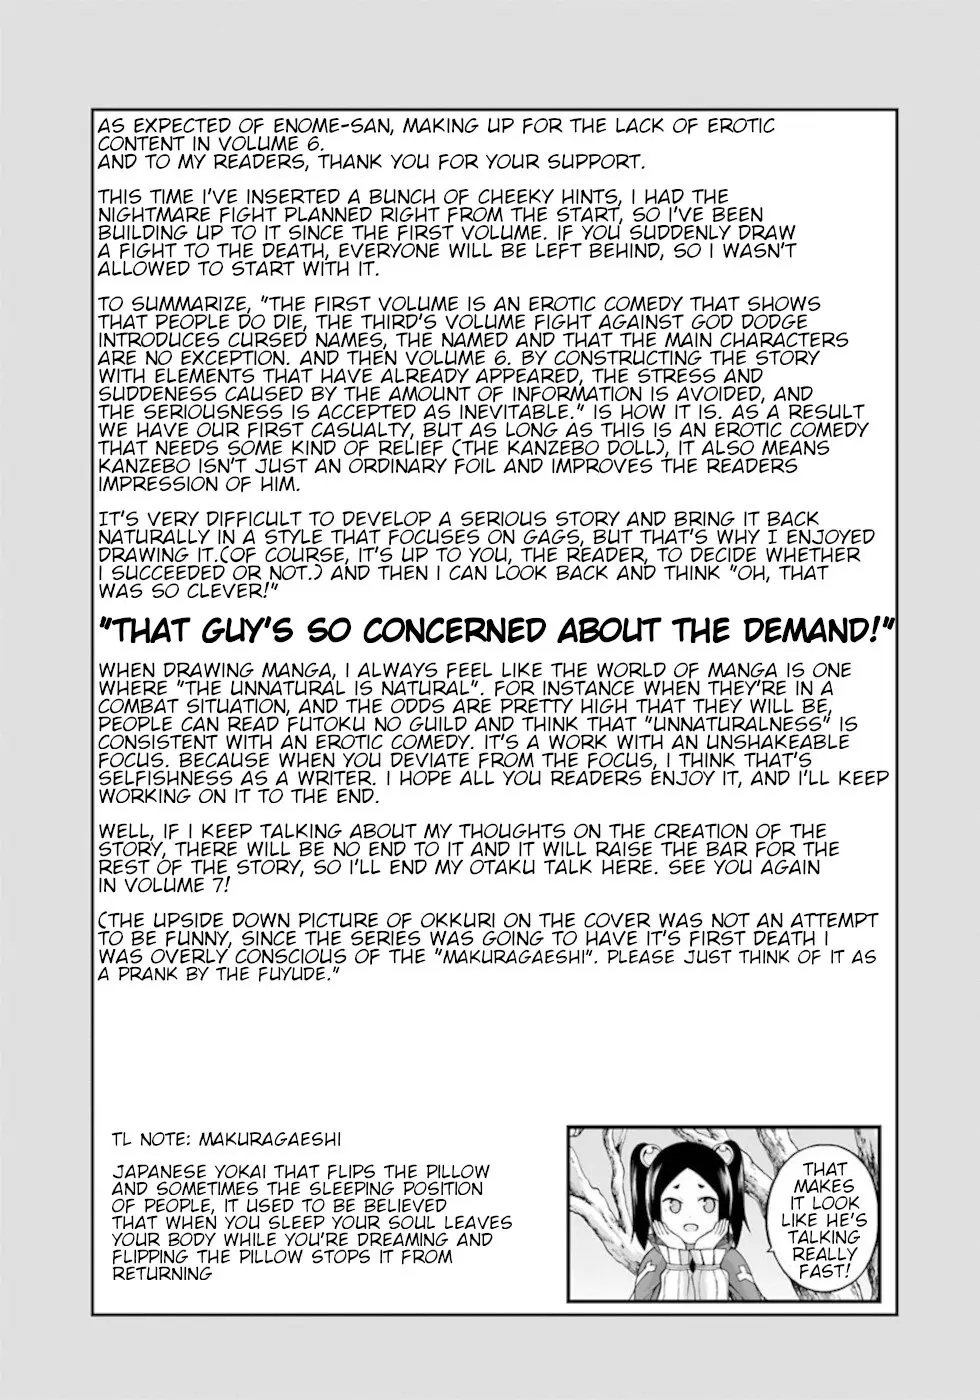 Futoku No Guild - 36 page 33